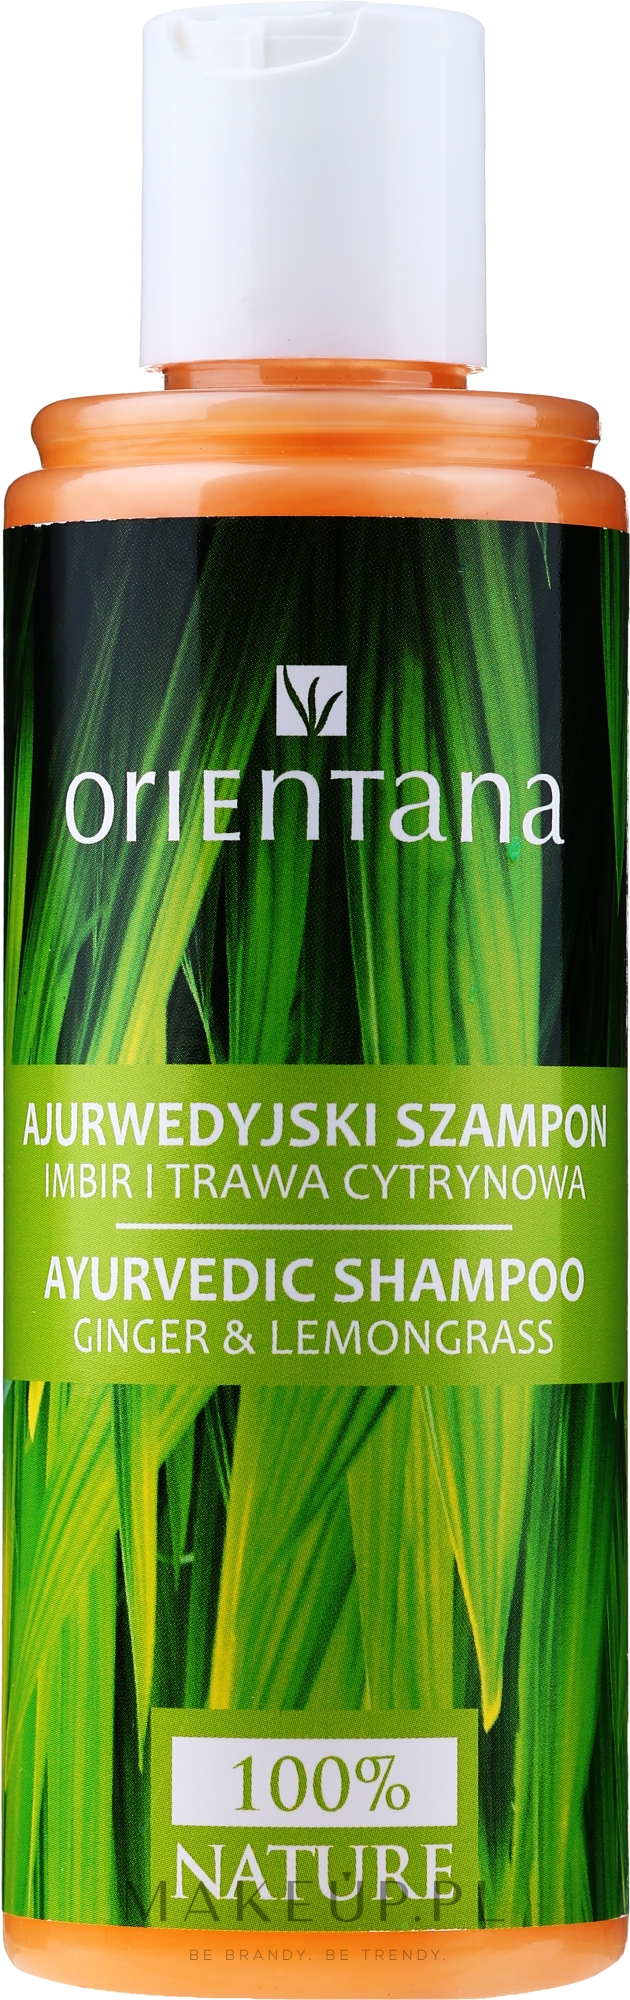 ajurwedyjski szampon do włosów imbir i trawa cytrynowa opinie